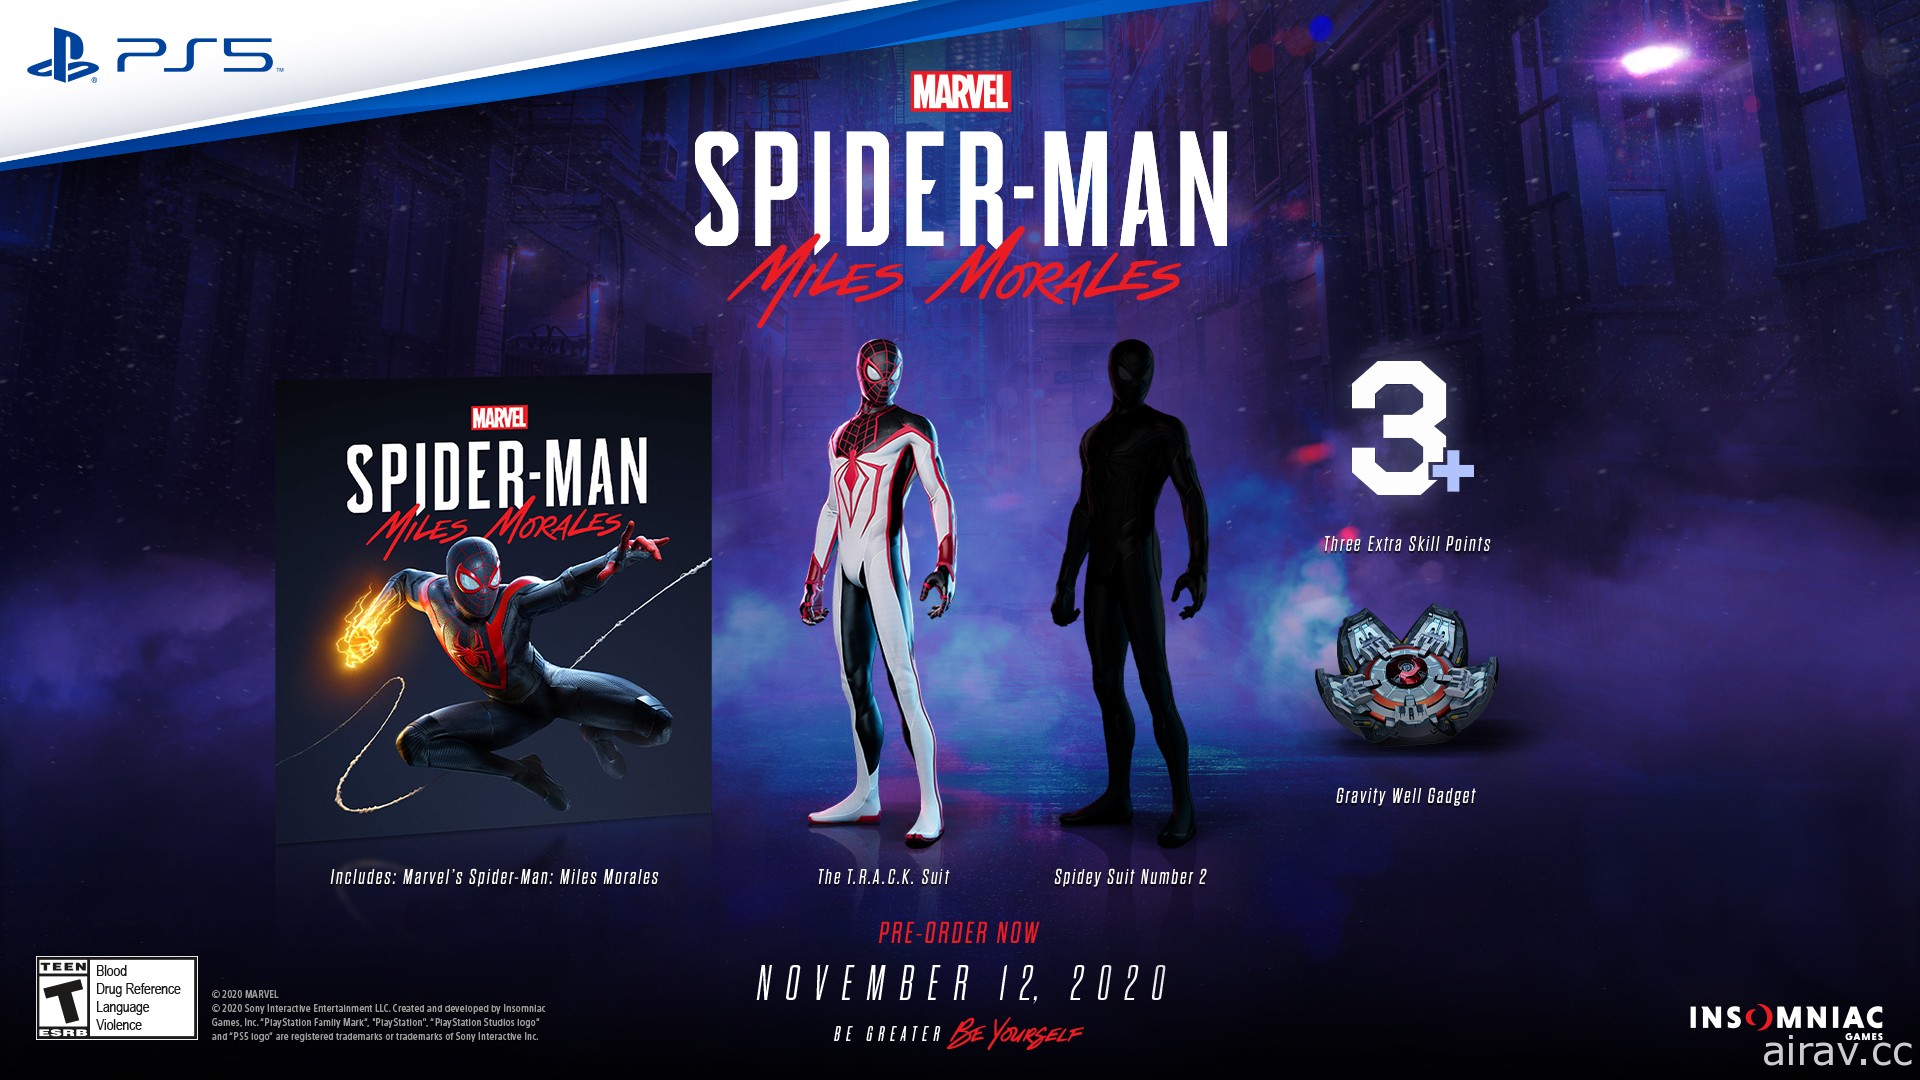 《漫威蜘蛛人》公布 PS5 重製版細節 導入光線追蹤技術與超高速讀取等新功能